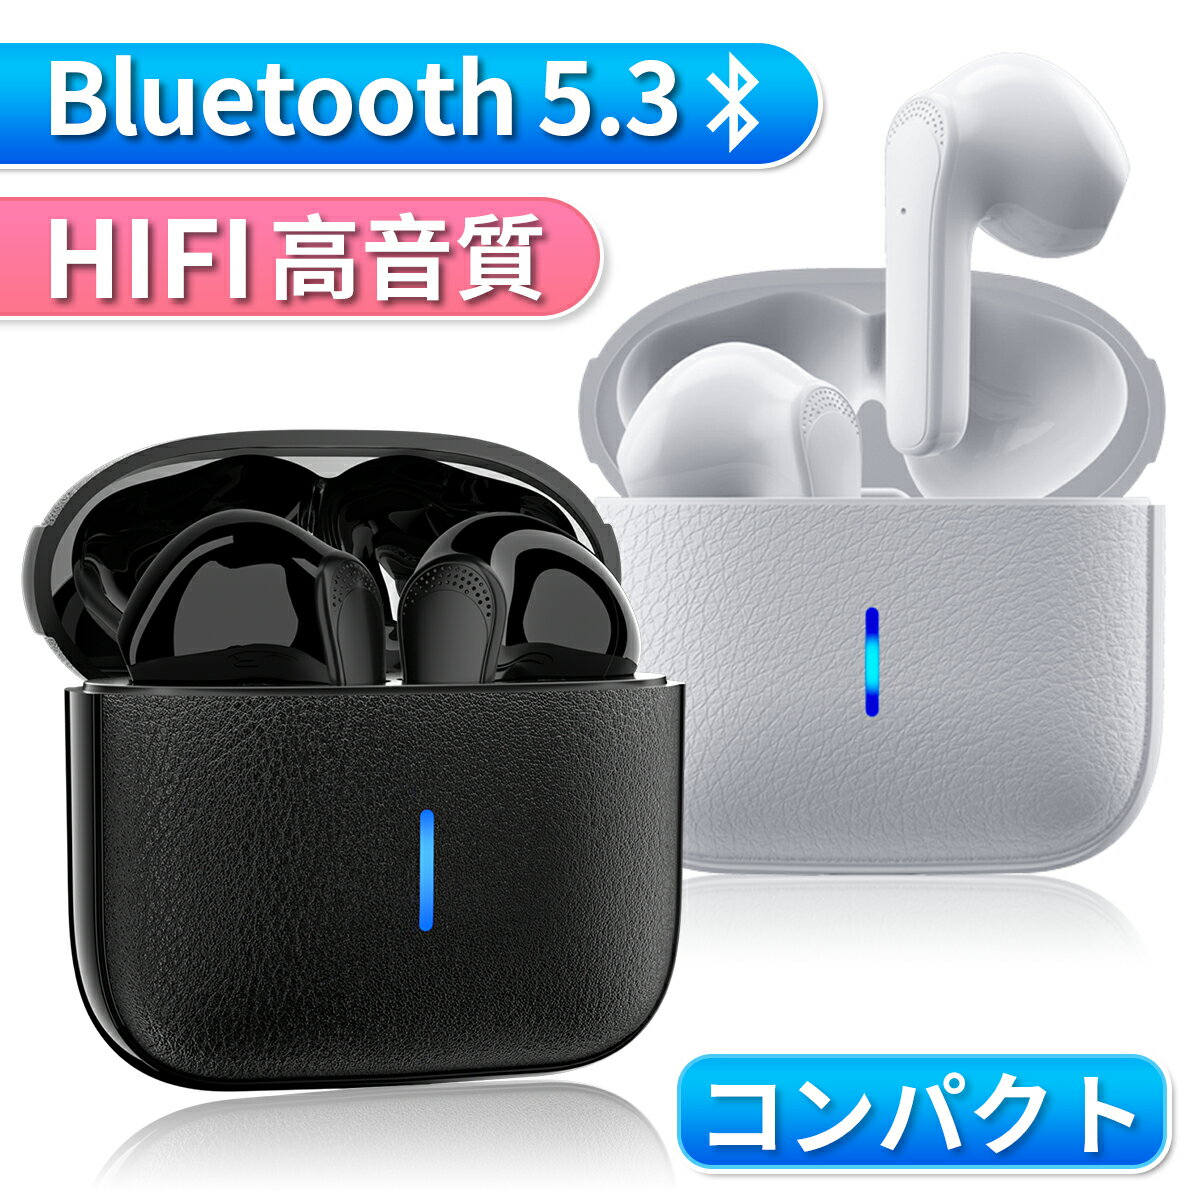 ワイヤレスイヤホン iPhone イヤホン Bluetooth5.3 コンパクト おしゃれ 革ケース ブルートゥース HiFi 高音質 IPX6…